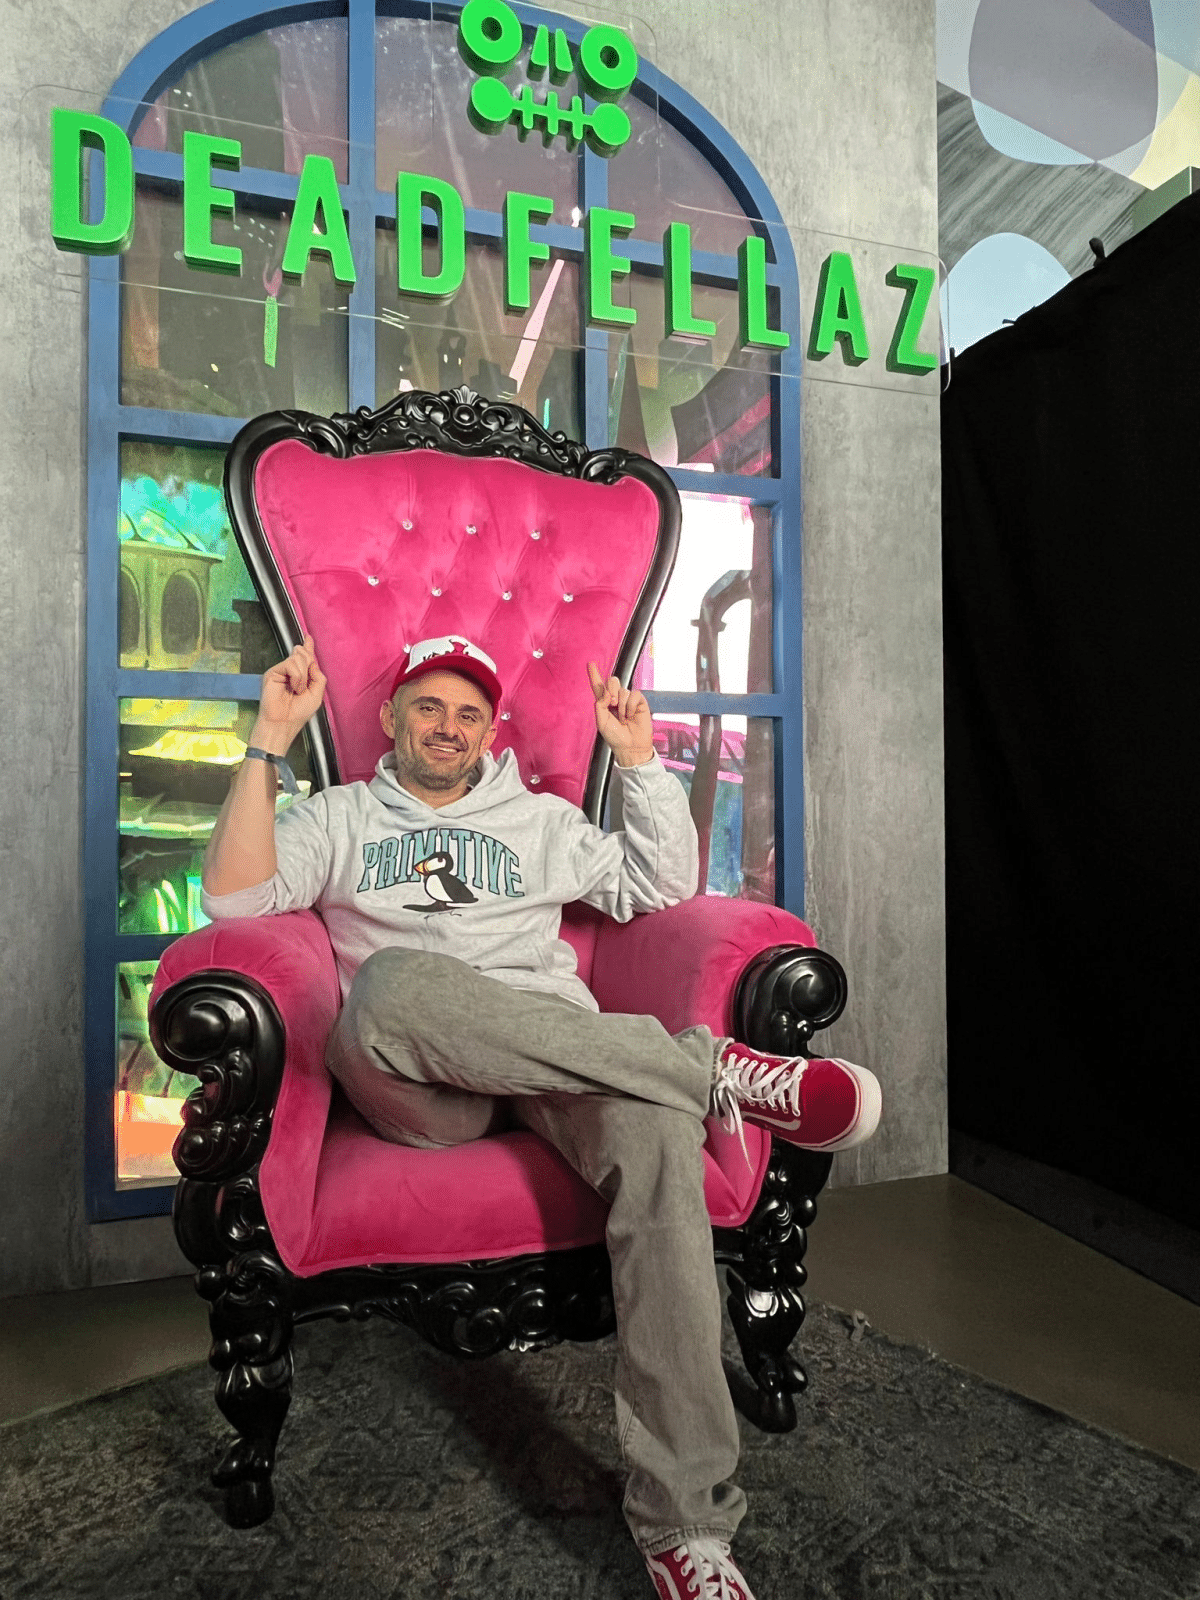 La photo montre Gary Vee assis sur une chaise et pointant vers un panneau au-dessus de sa tête qui dit DeadFellaz